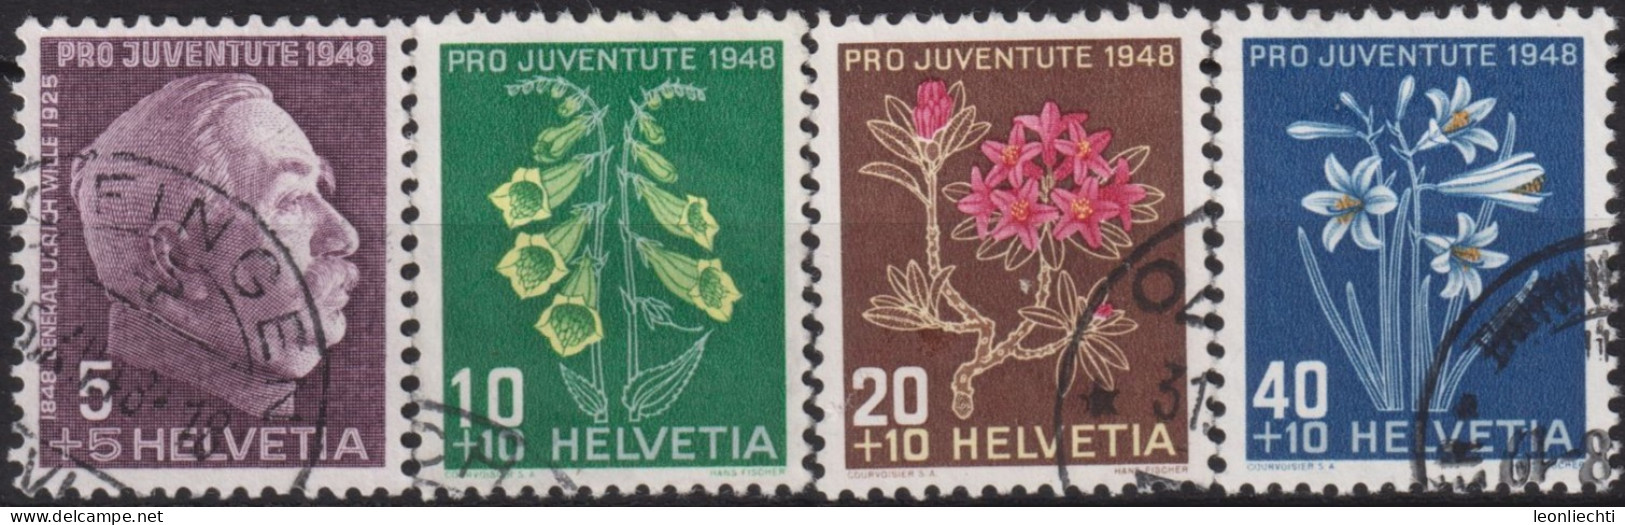 1948 Schweiz Pro Juventute ° Mi:CH 514-517, Yt:CH 467-470, Zum:CH J125-J128,  G. Wille Und Alpenblumen - Oblitérés